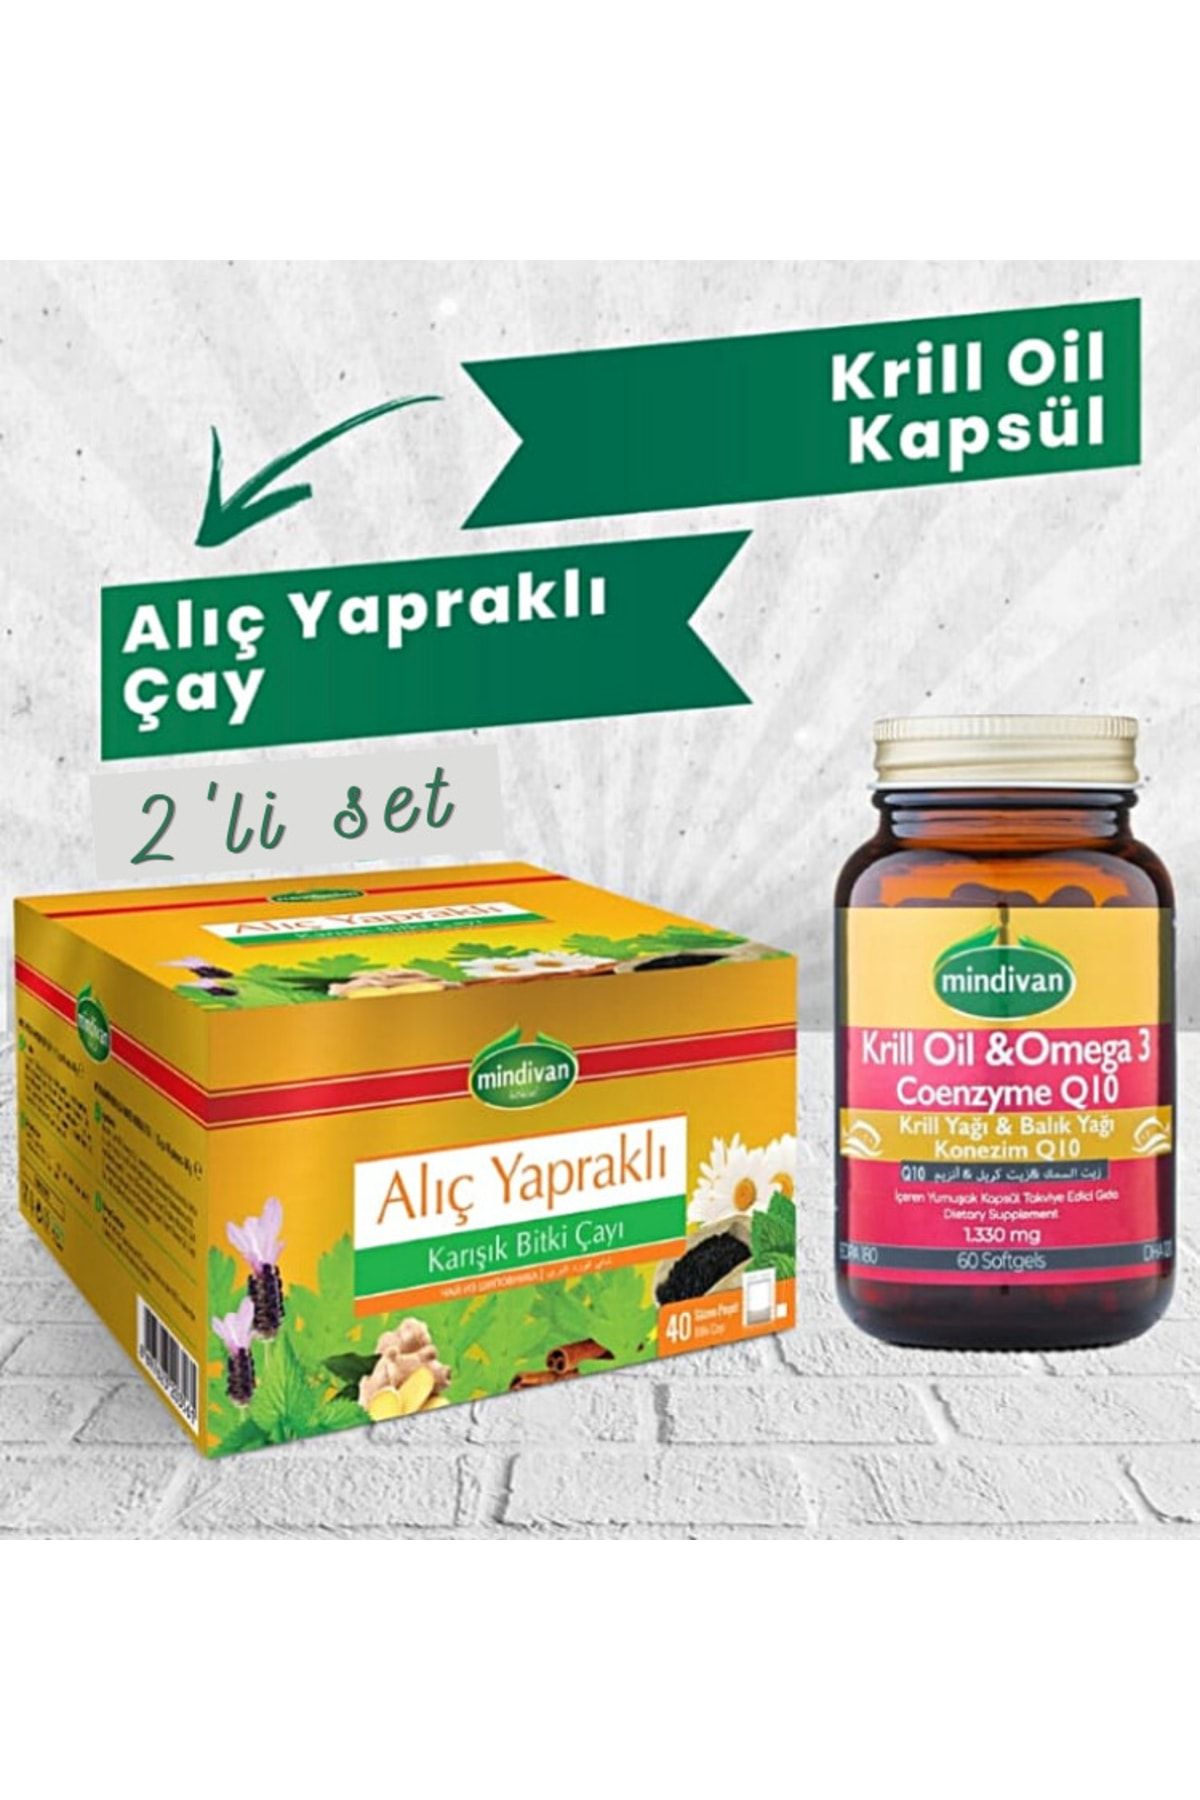 Krill Oil Kapsül Ve Alıç Yapraklı Çay_0